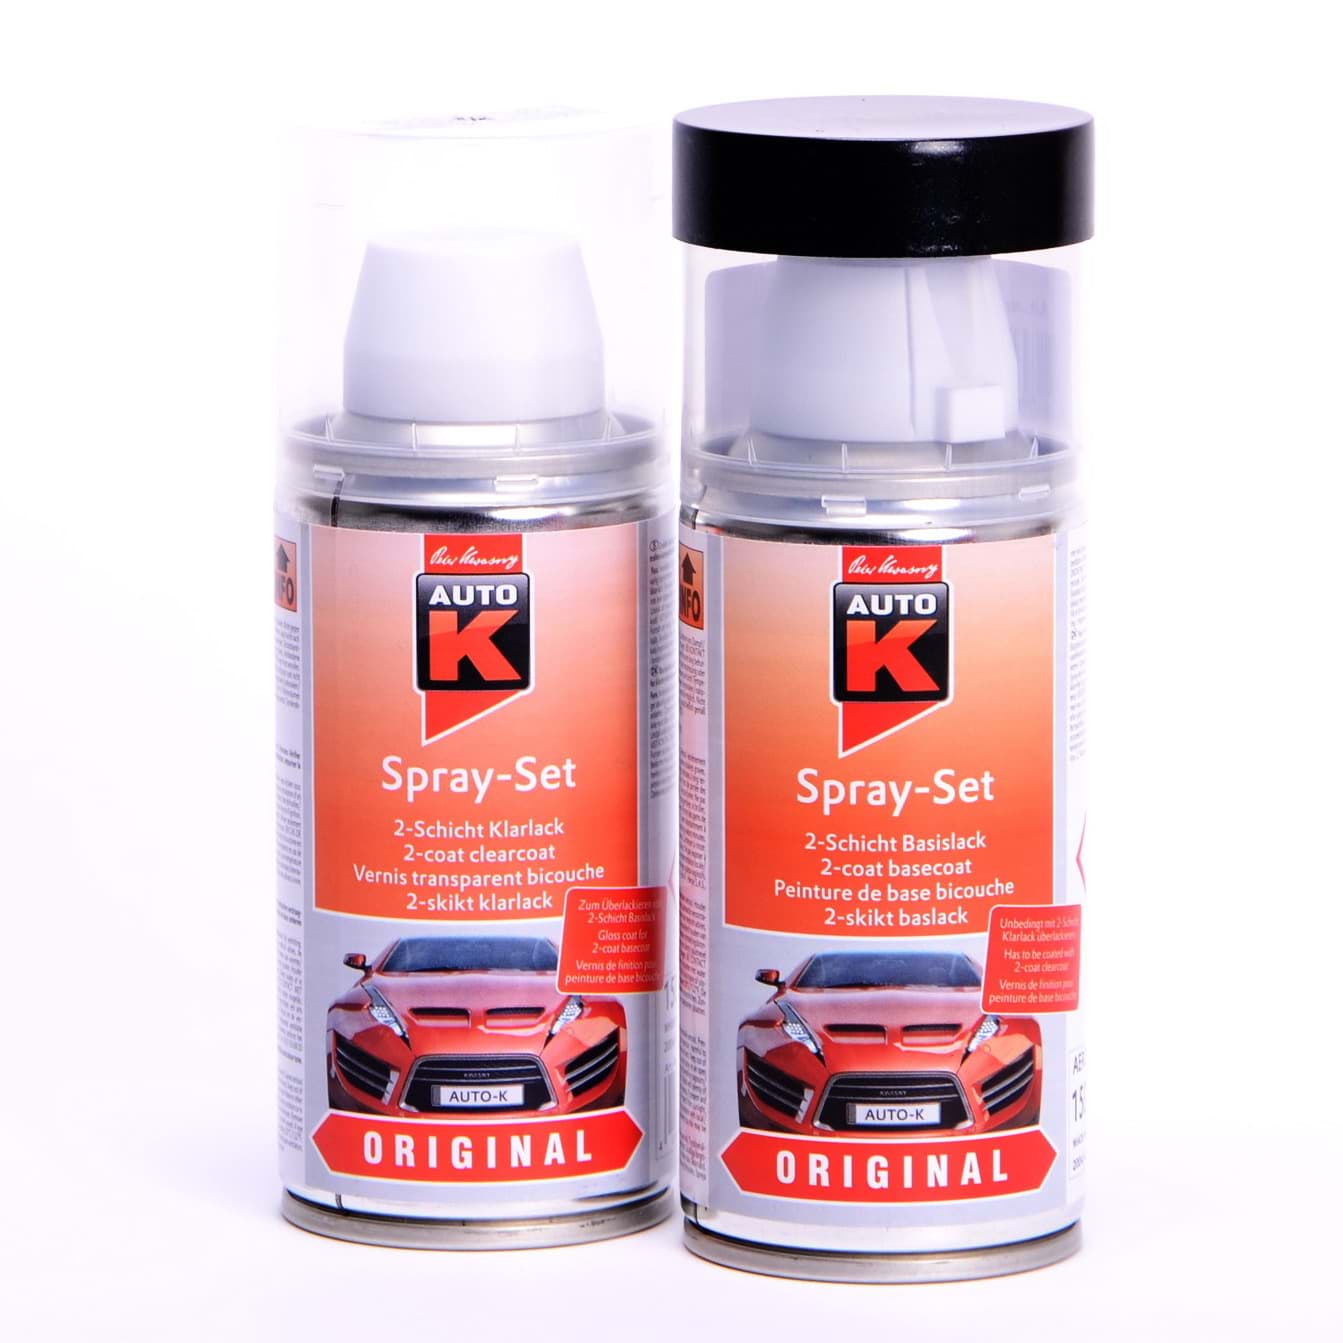 Afbeelding van Auto-K Spray-Set Autolack für Mercedes 737 Classicweiss 23173